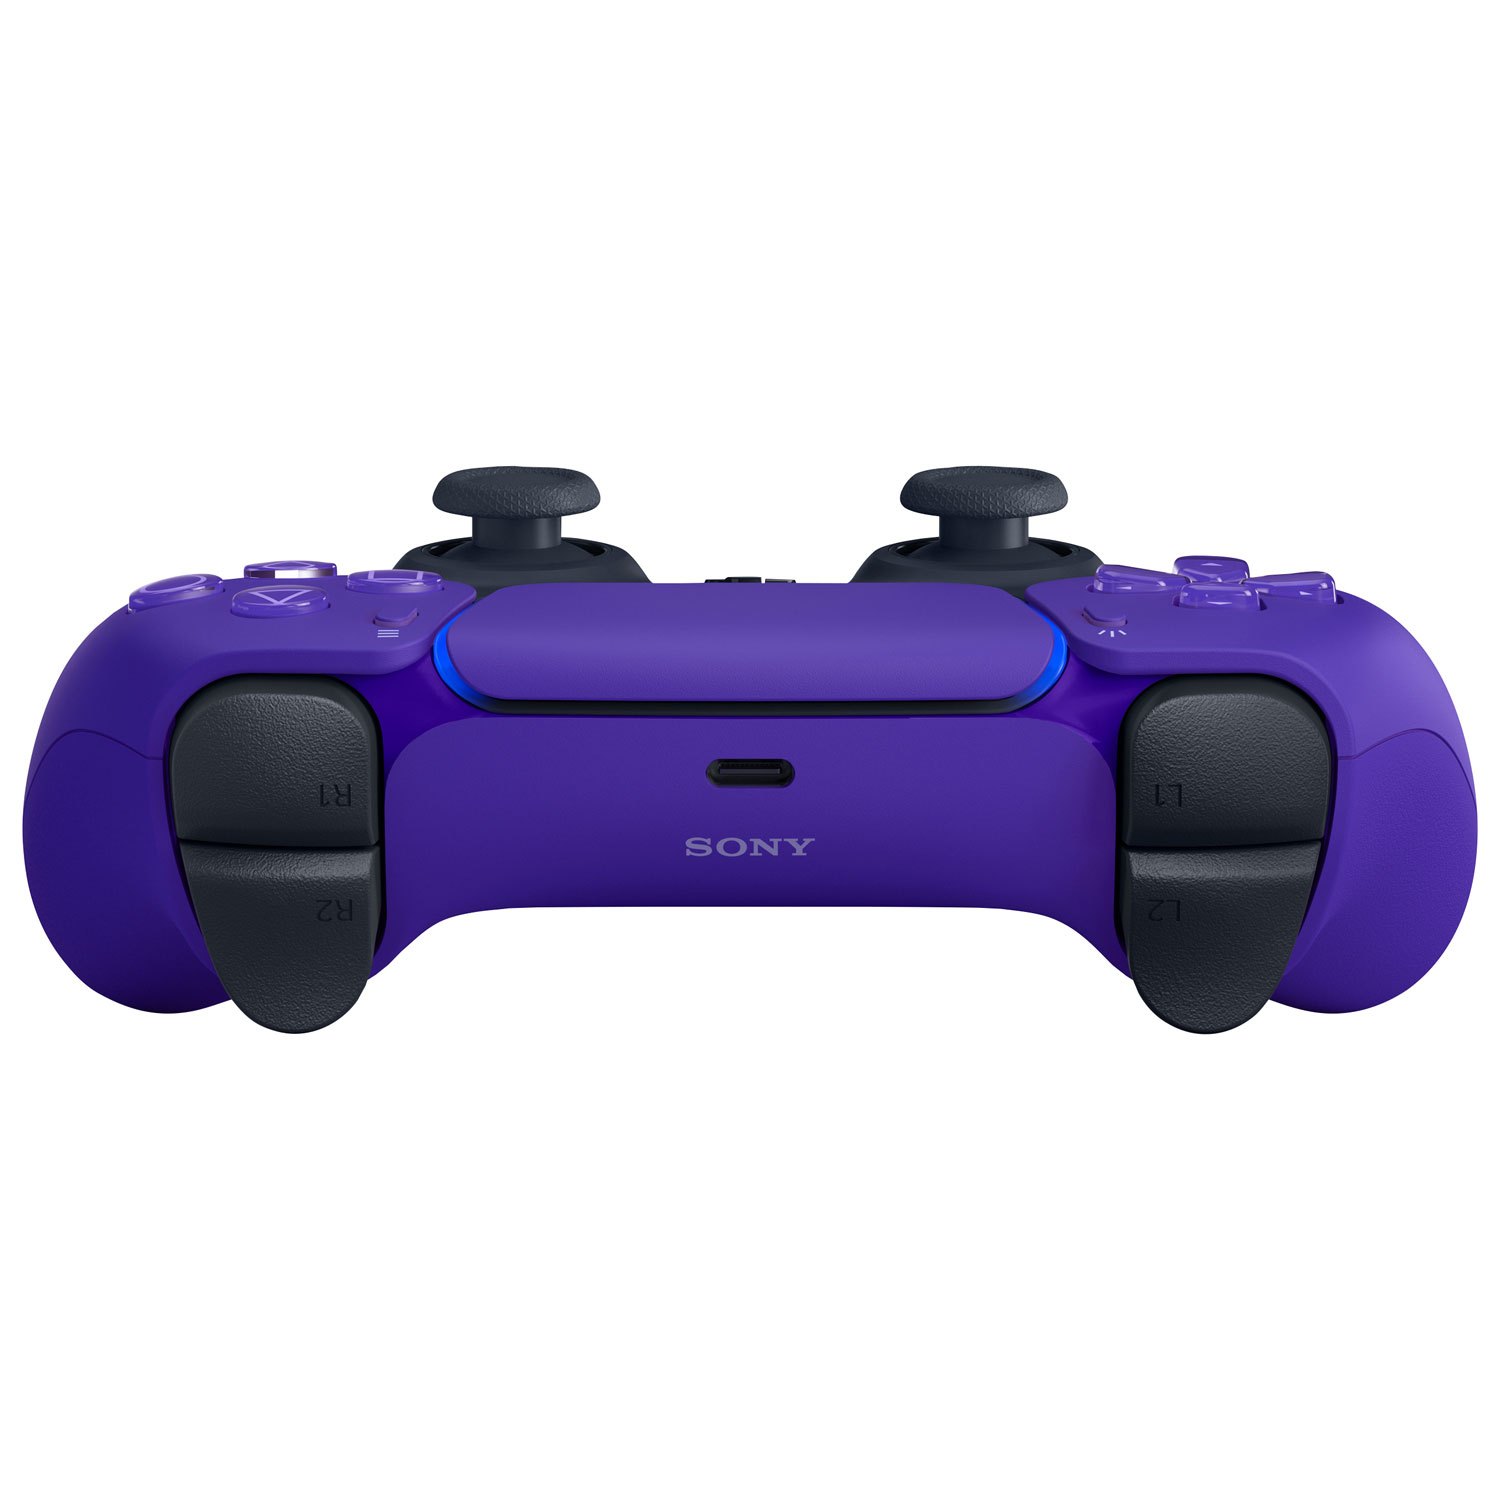 Les manettes PS5 seront disponibles en rose, bleu et violet en janvier